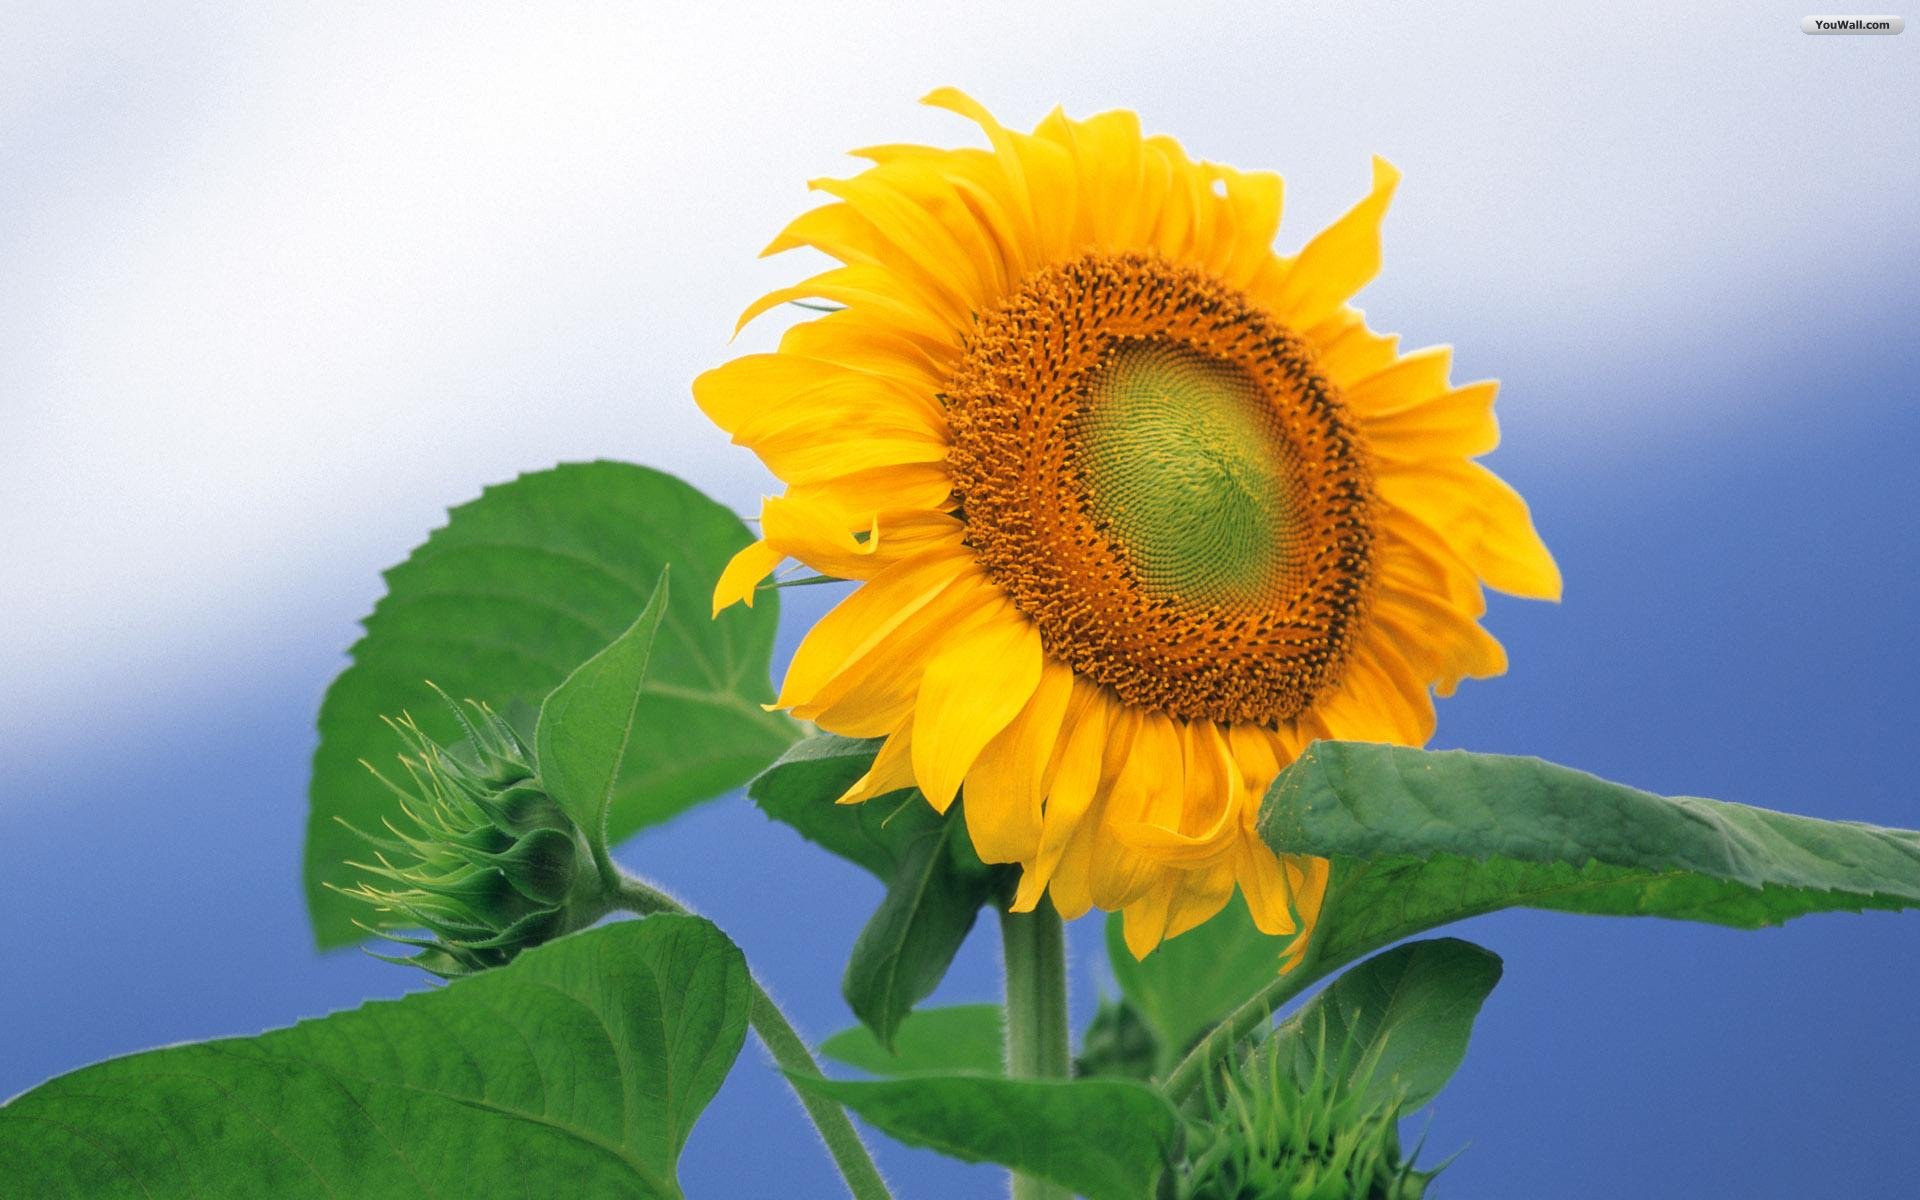 Youwall Sunflower Wallpaper